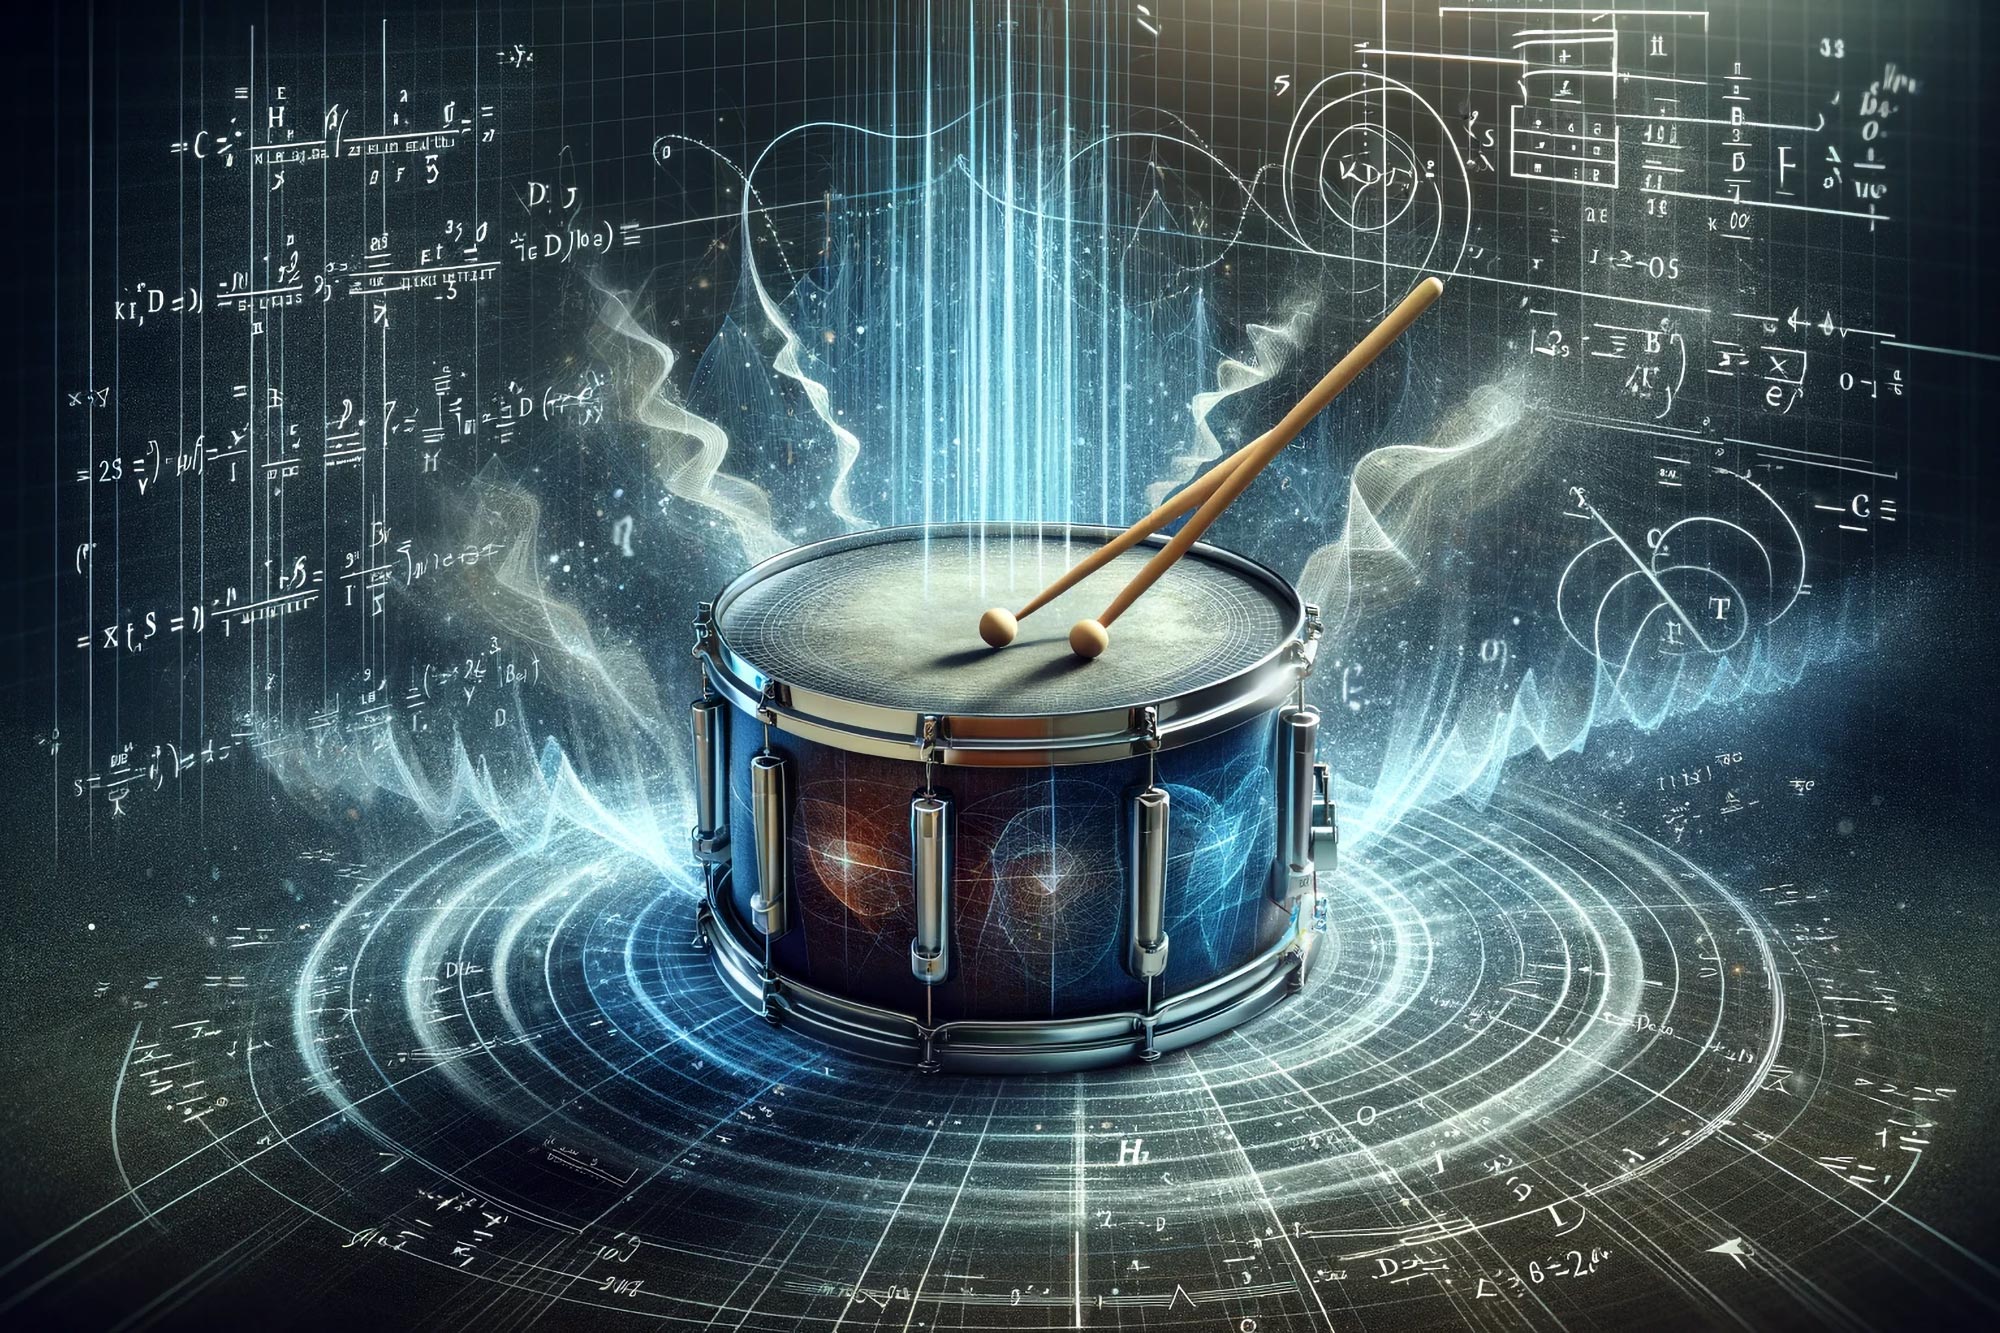 Decifrare la geometria della musica: risolvere un problema matematico vecchio di 70 anni